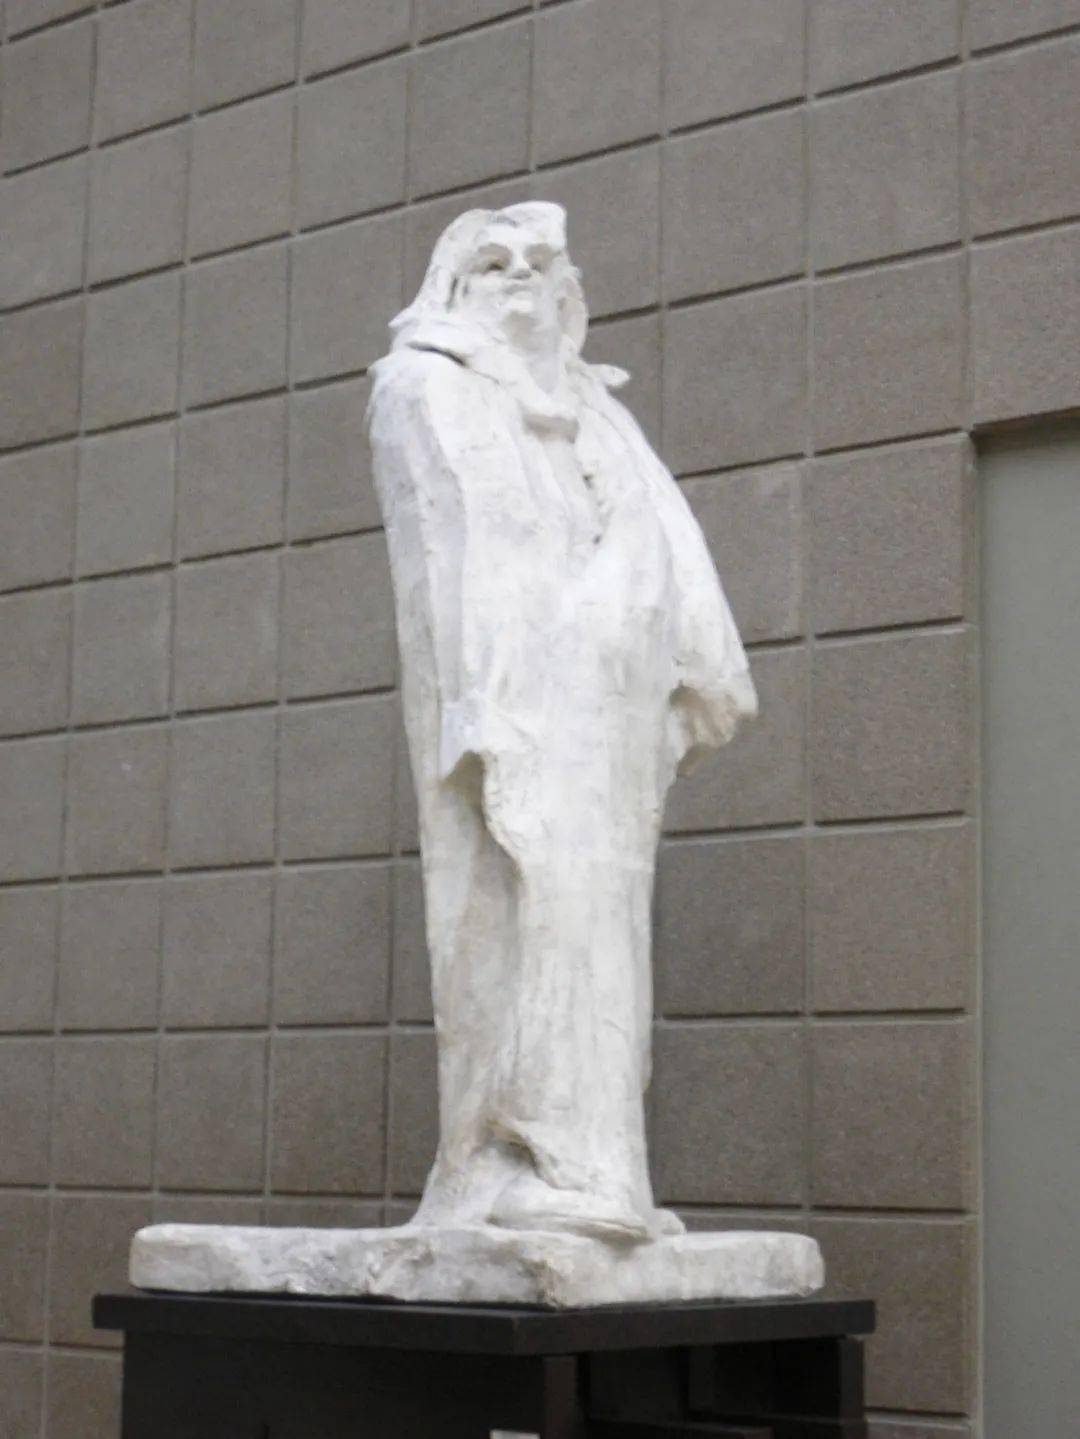 法国巴黎奥赛美术馆罗丹雕塑巴尔扎克品目面对莫扎特们,人们真不